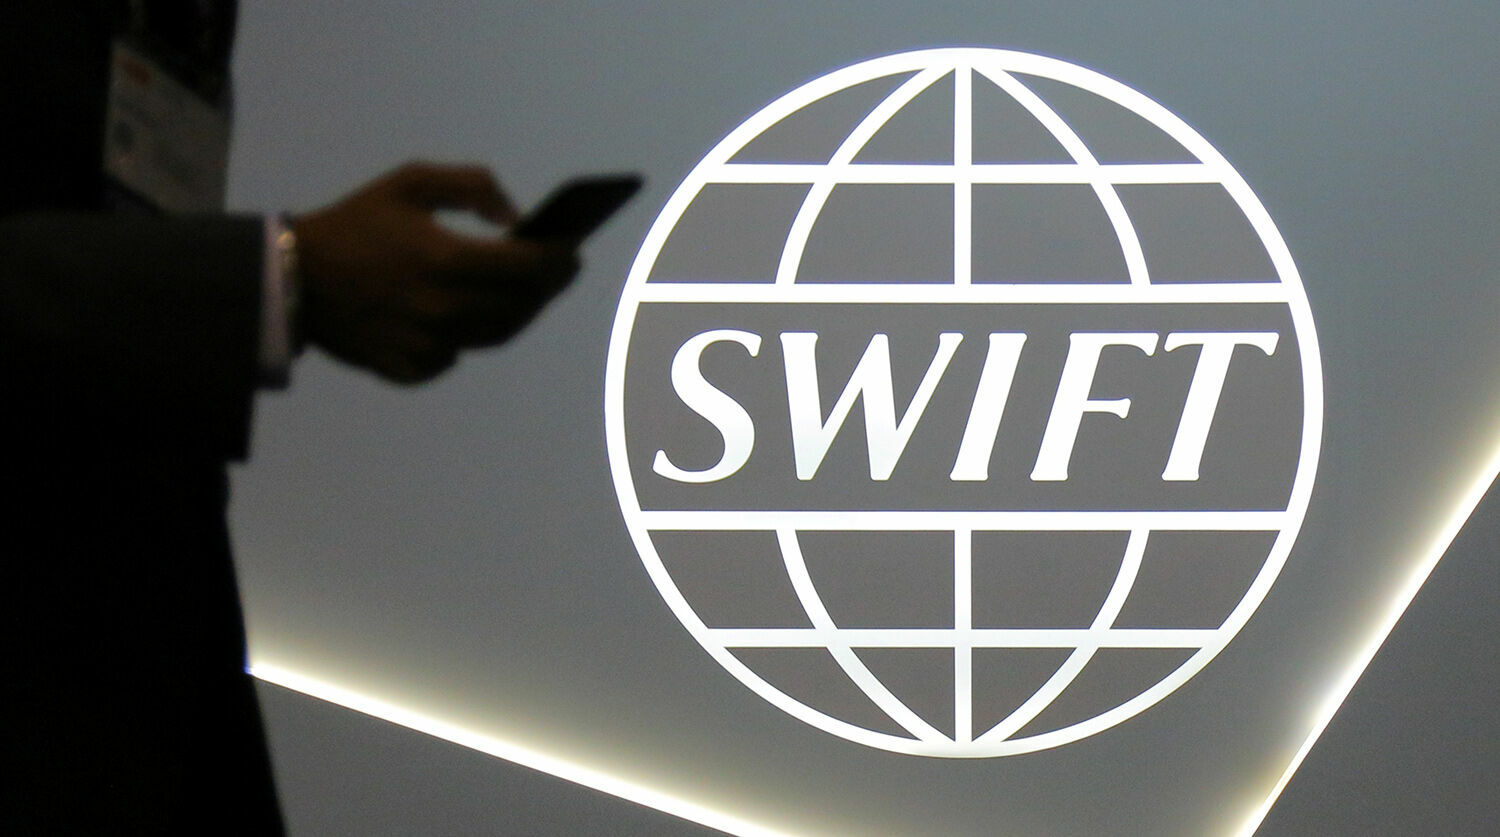 Россия готова заменить SWIFT китайским аналогом